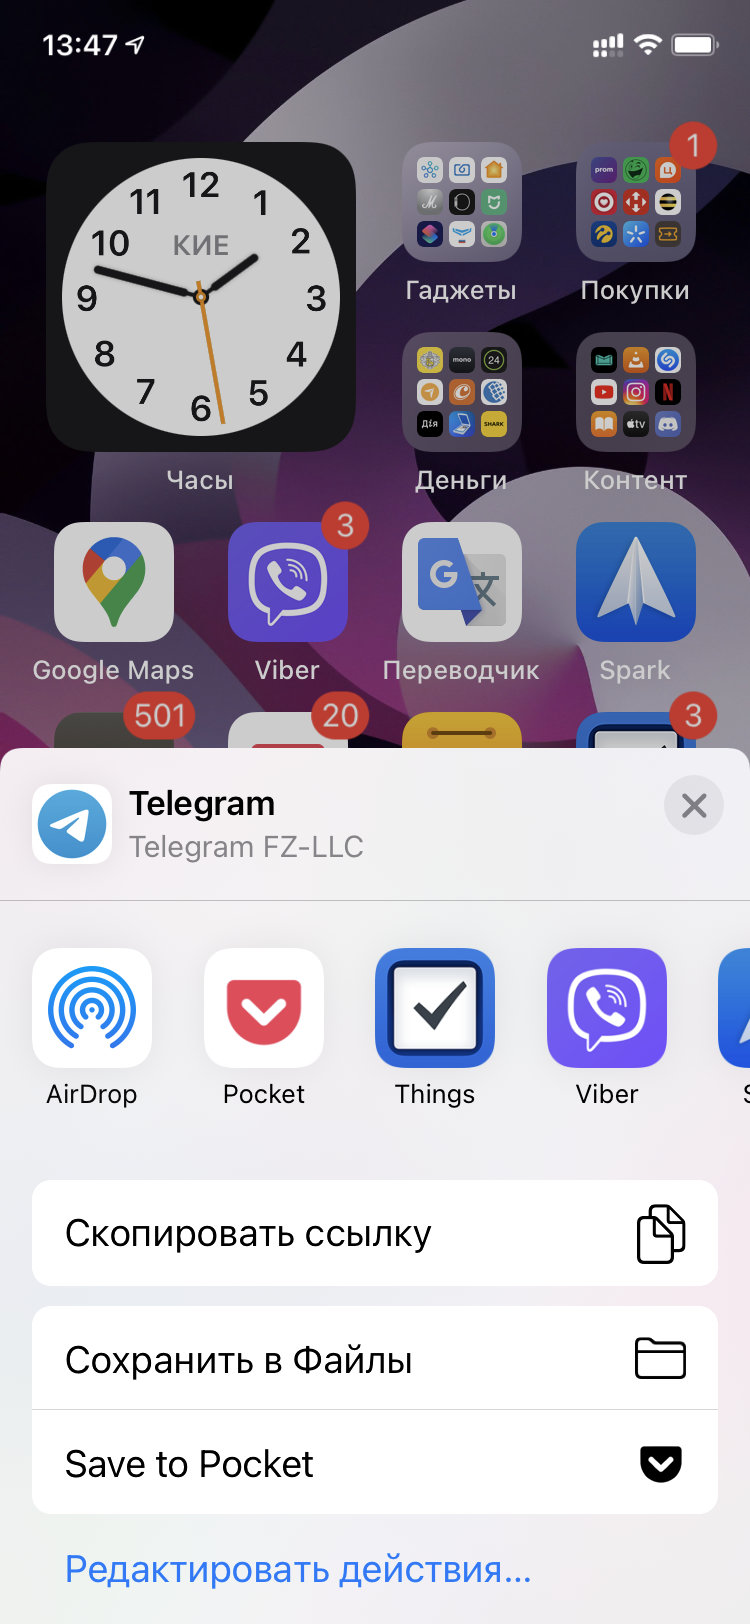 Установить телеграмм на айфон бесплатно на русском языке приложение для скачивания приложений айфон фото 68